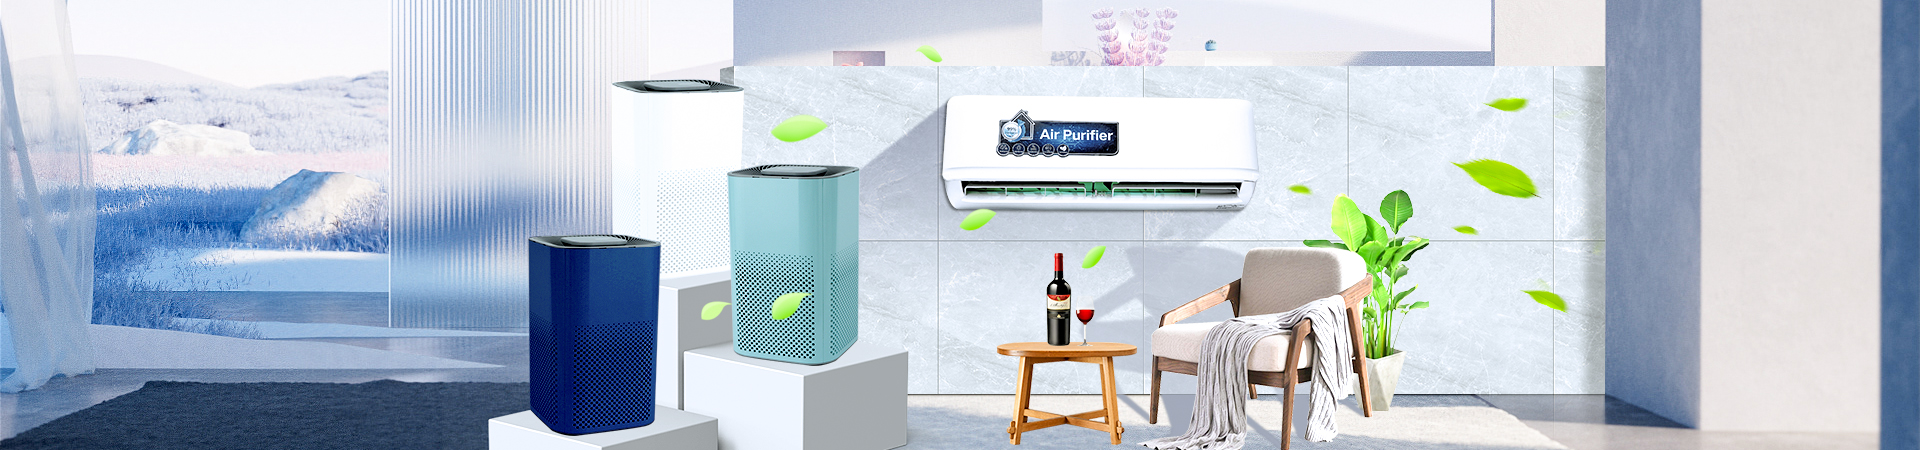 air purifier wholesale